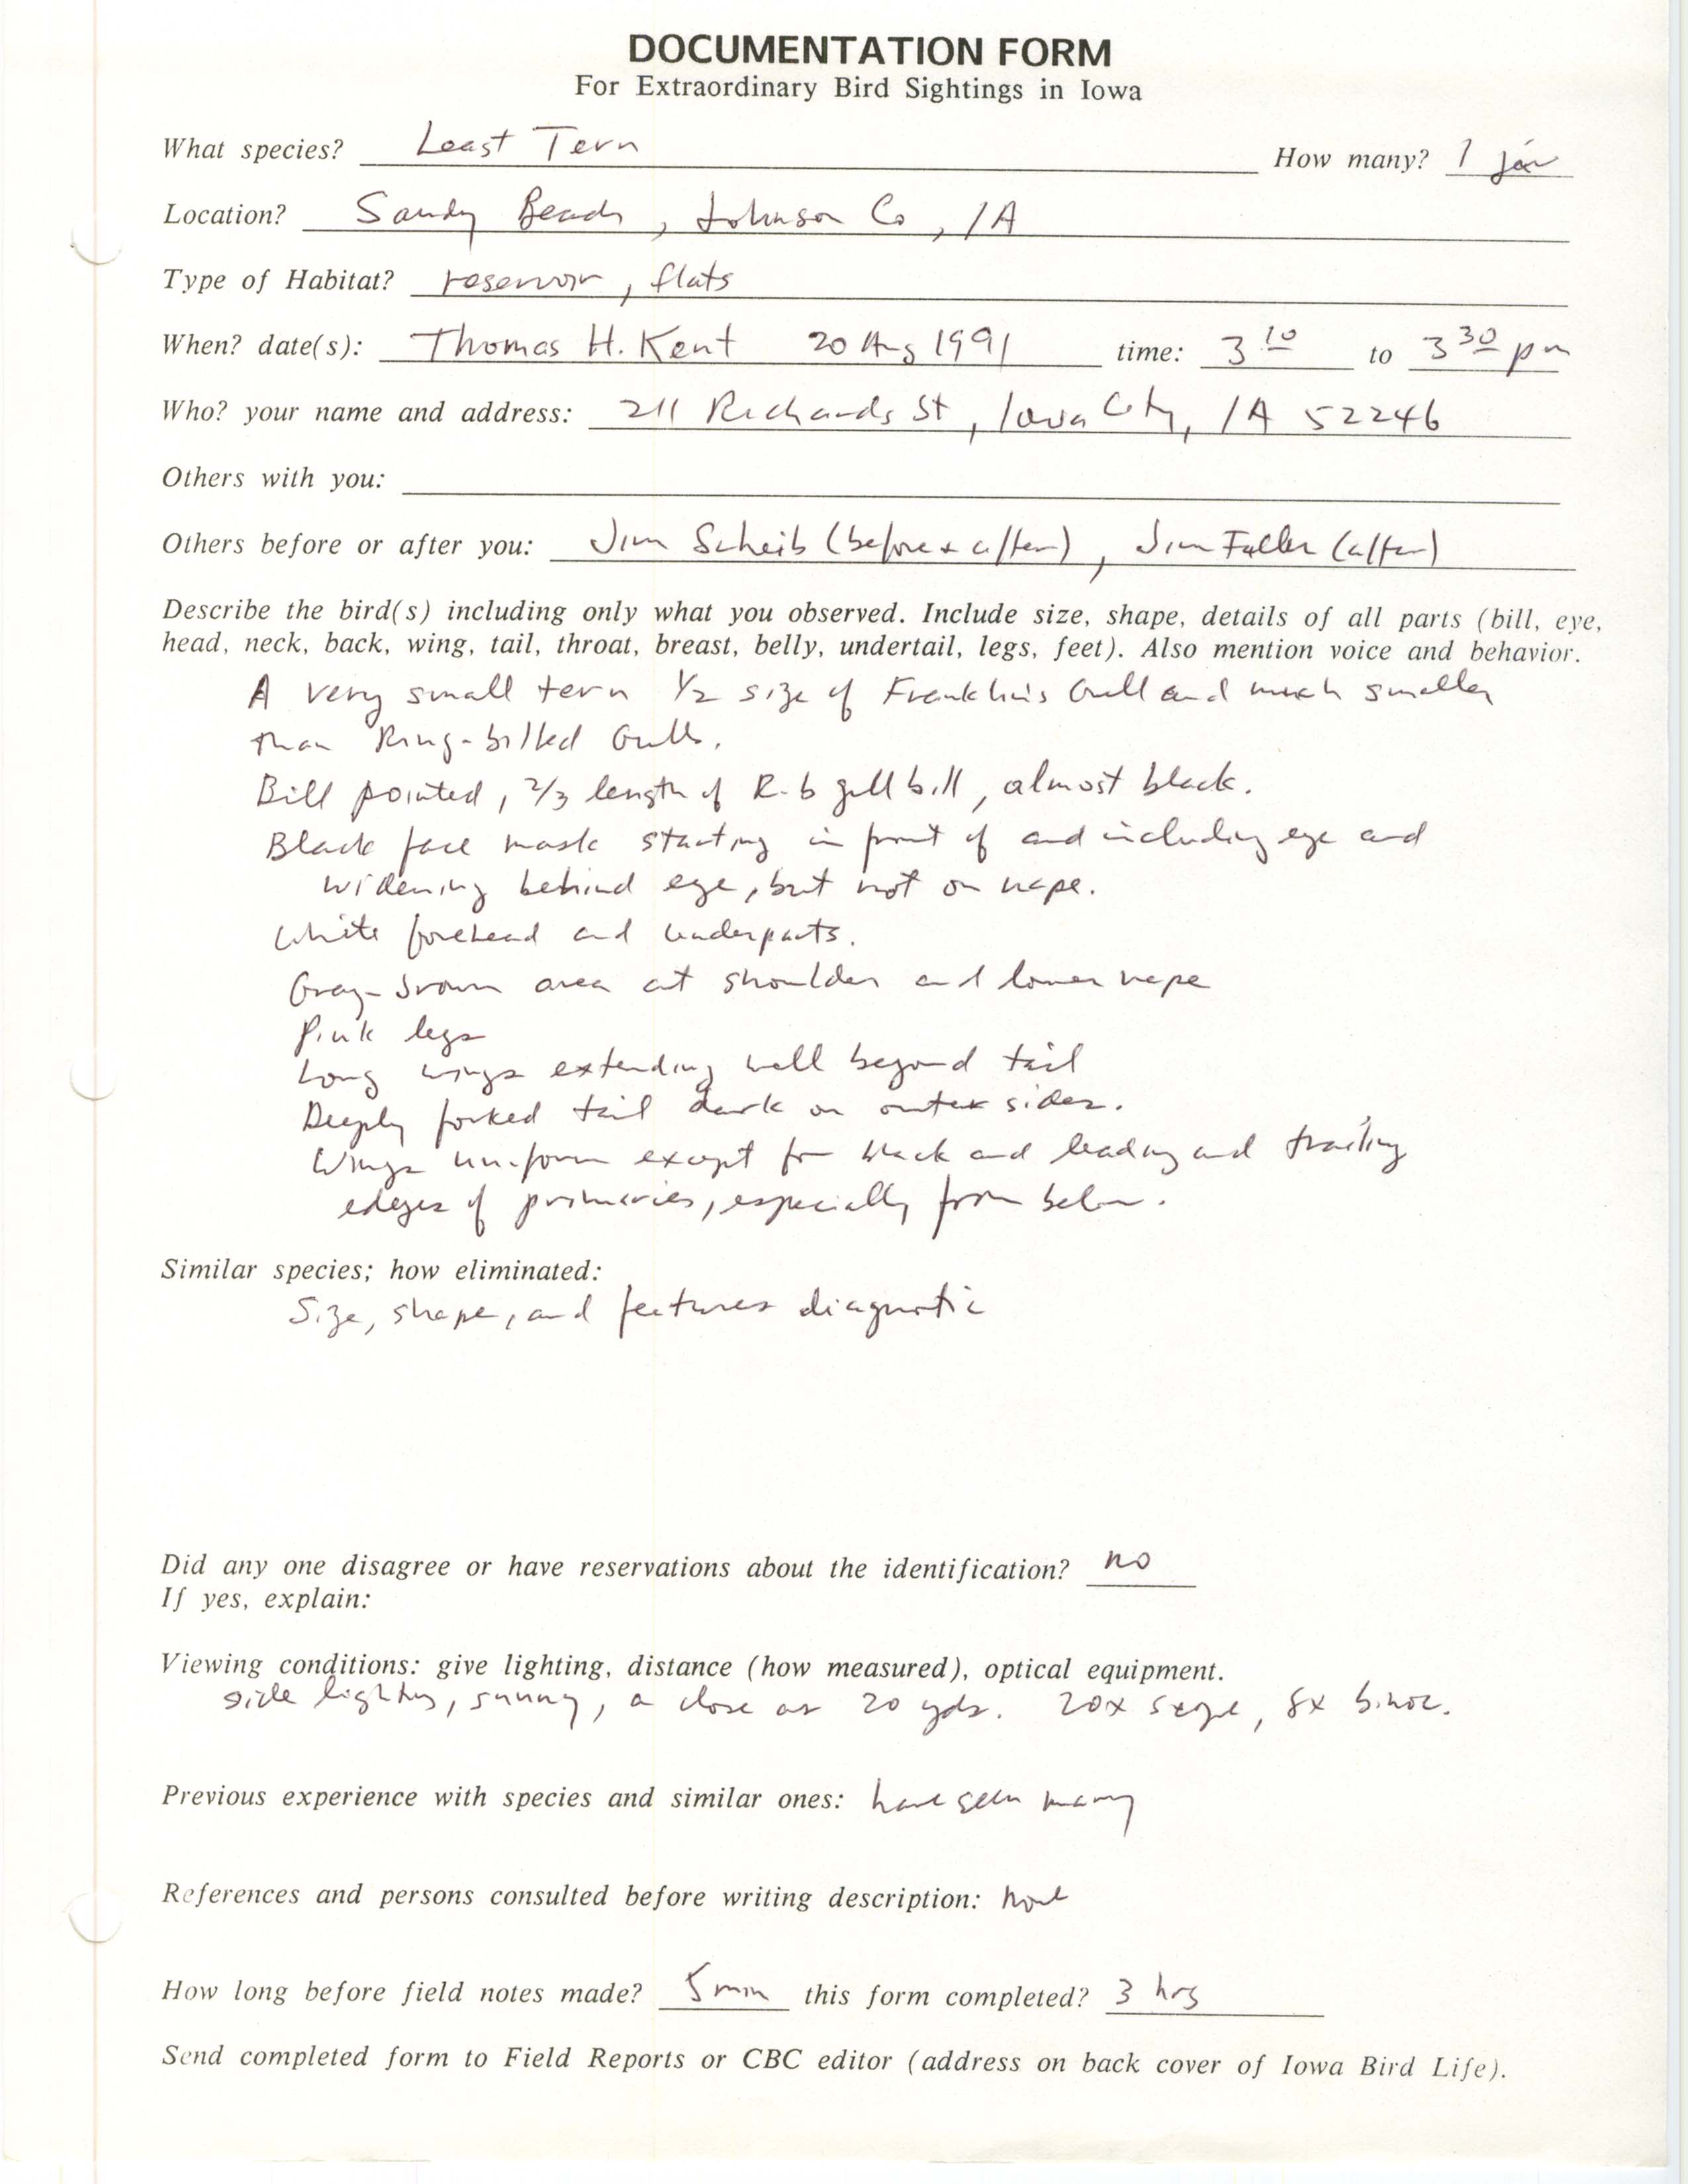 Rare bird documentation form for Least Tern at Sandy Beach, 1991